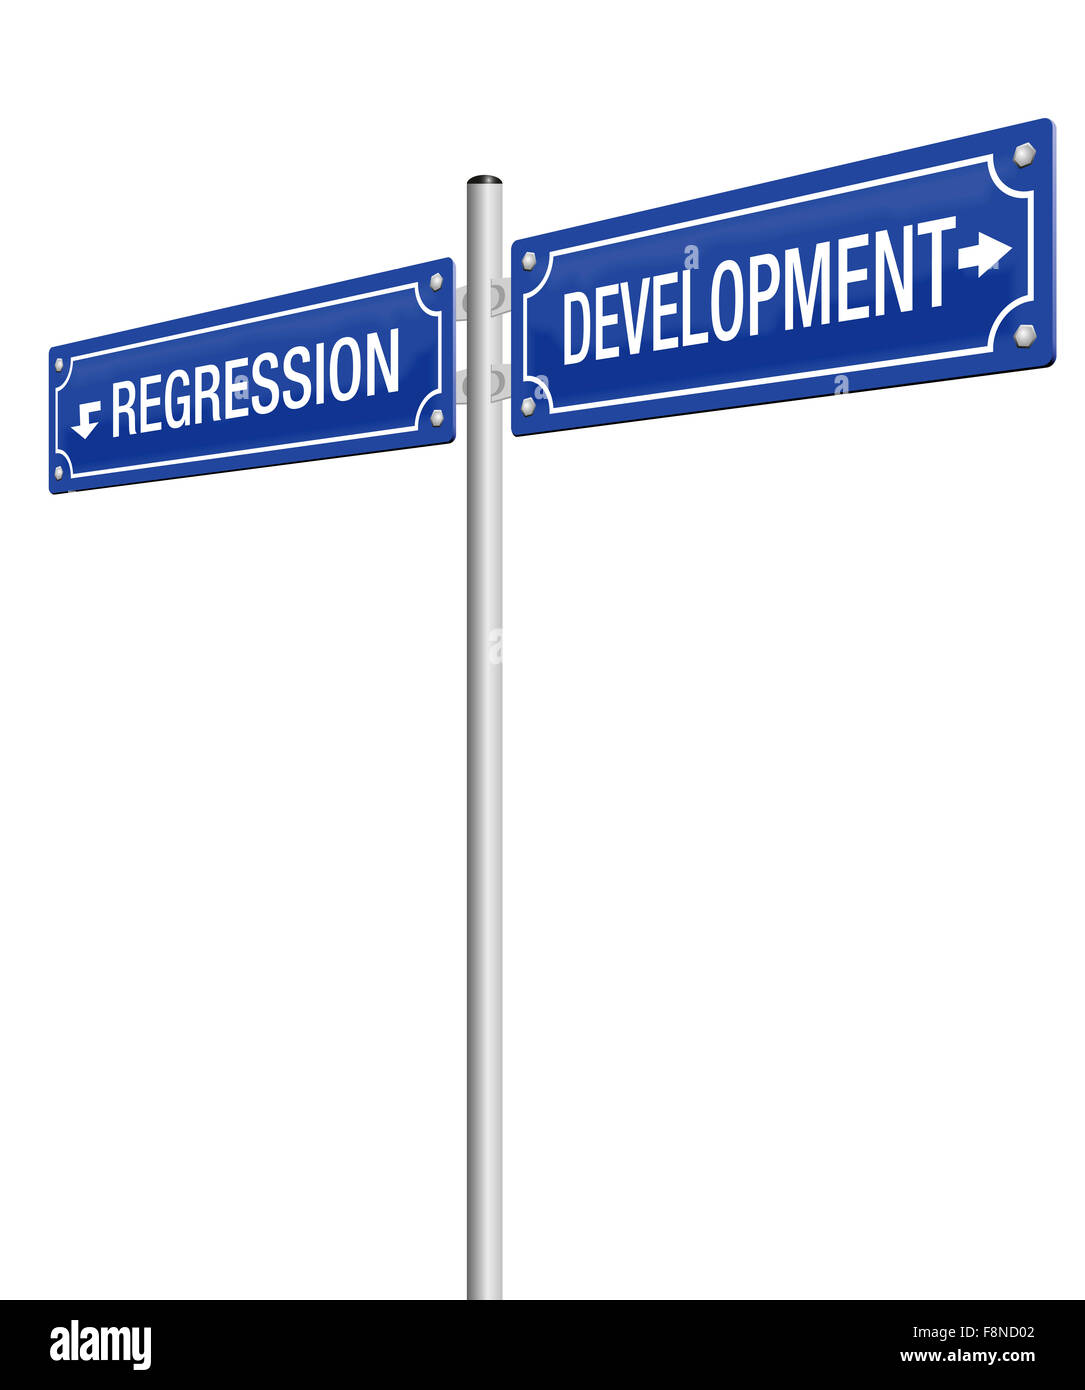 Lo sviluppo e la regressione, scritto su due cartelli stradali. Immagine su sfondo bianco. Foto Stock